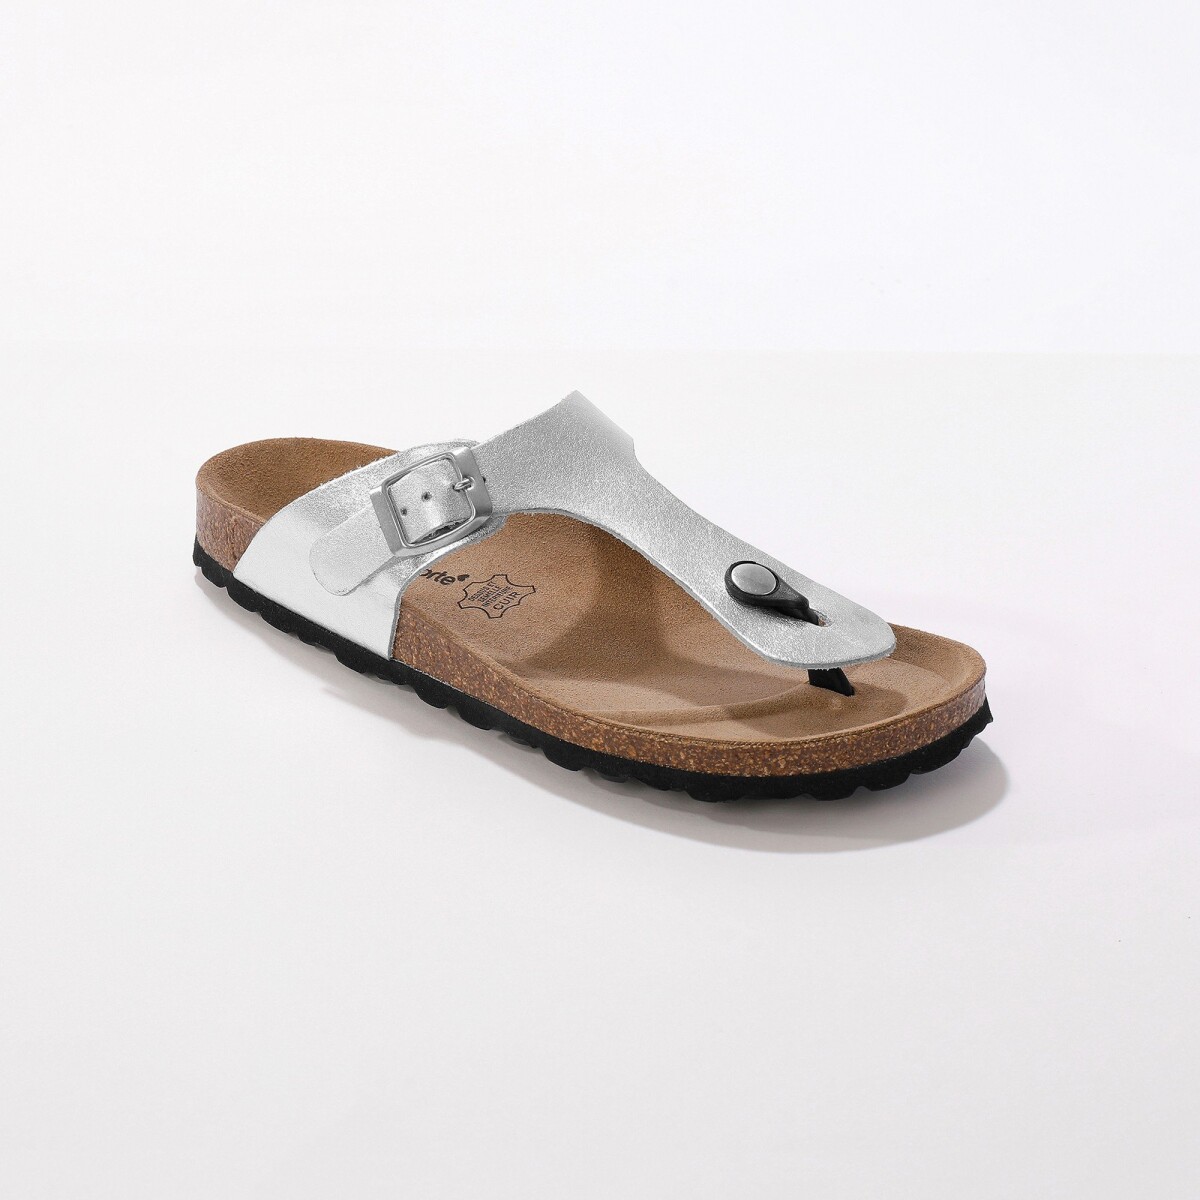 Žabkové kožené sandály se sponou, stříbrné